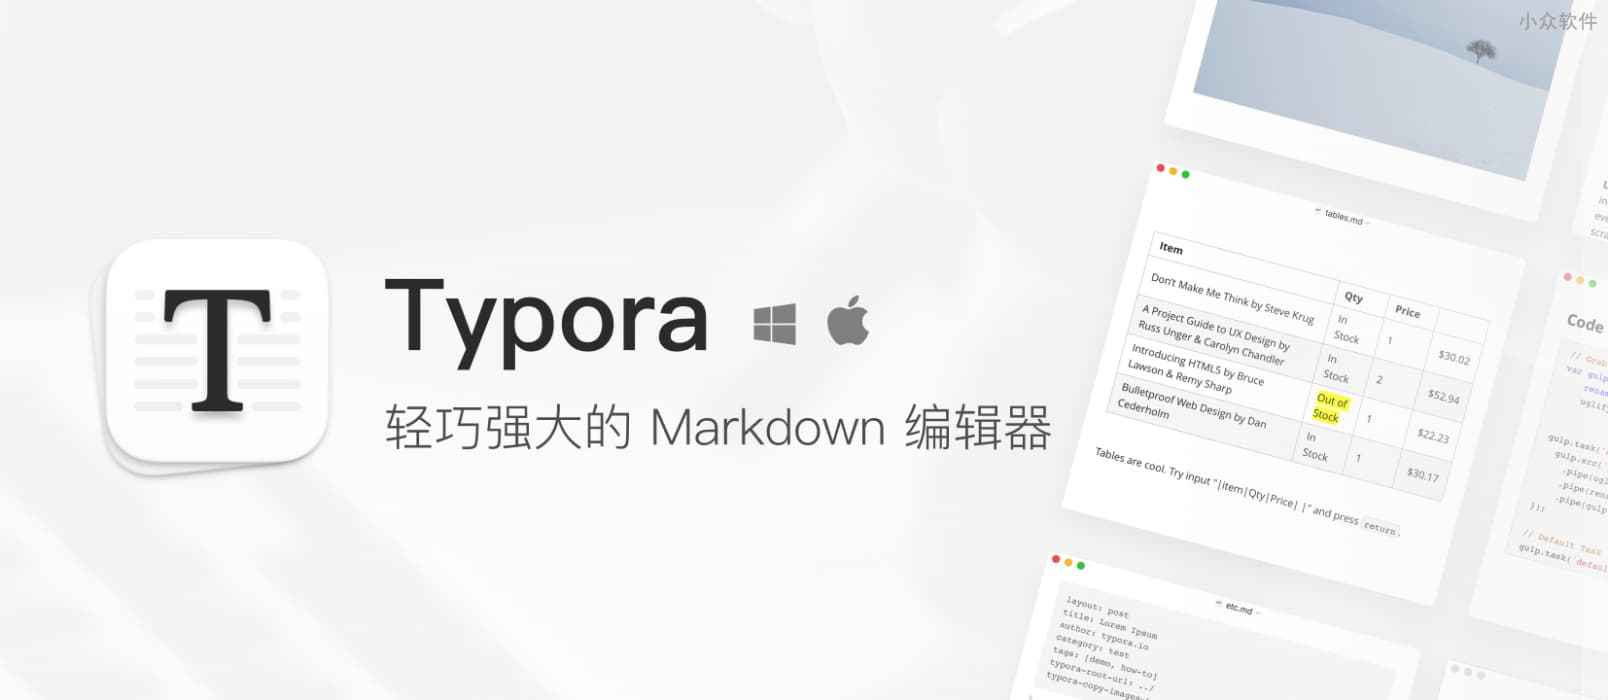 听闻 Typora 加大了对测试版更新提示的力度 1